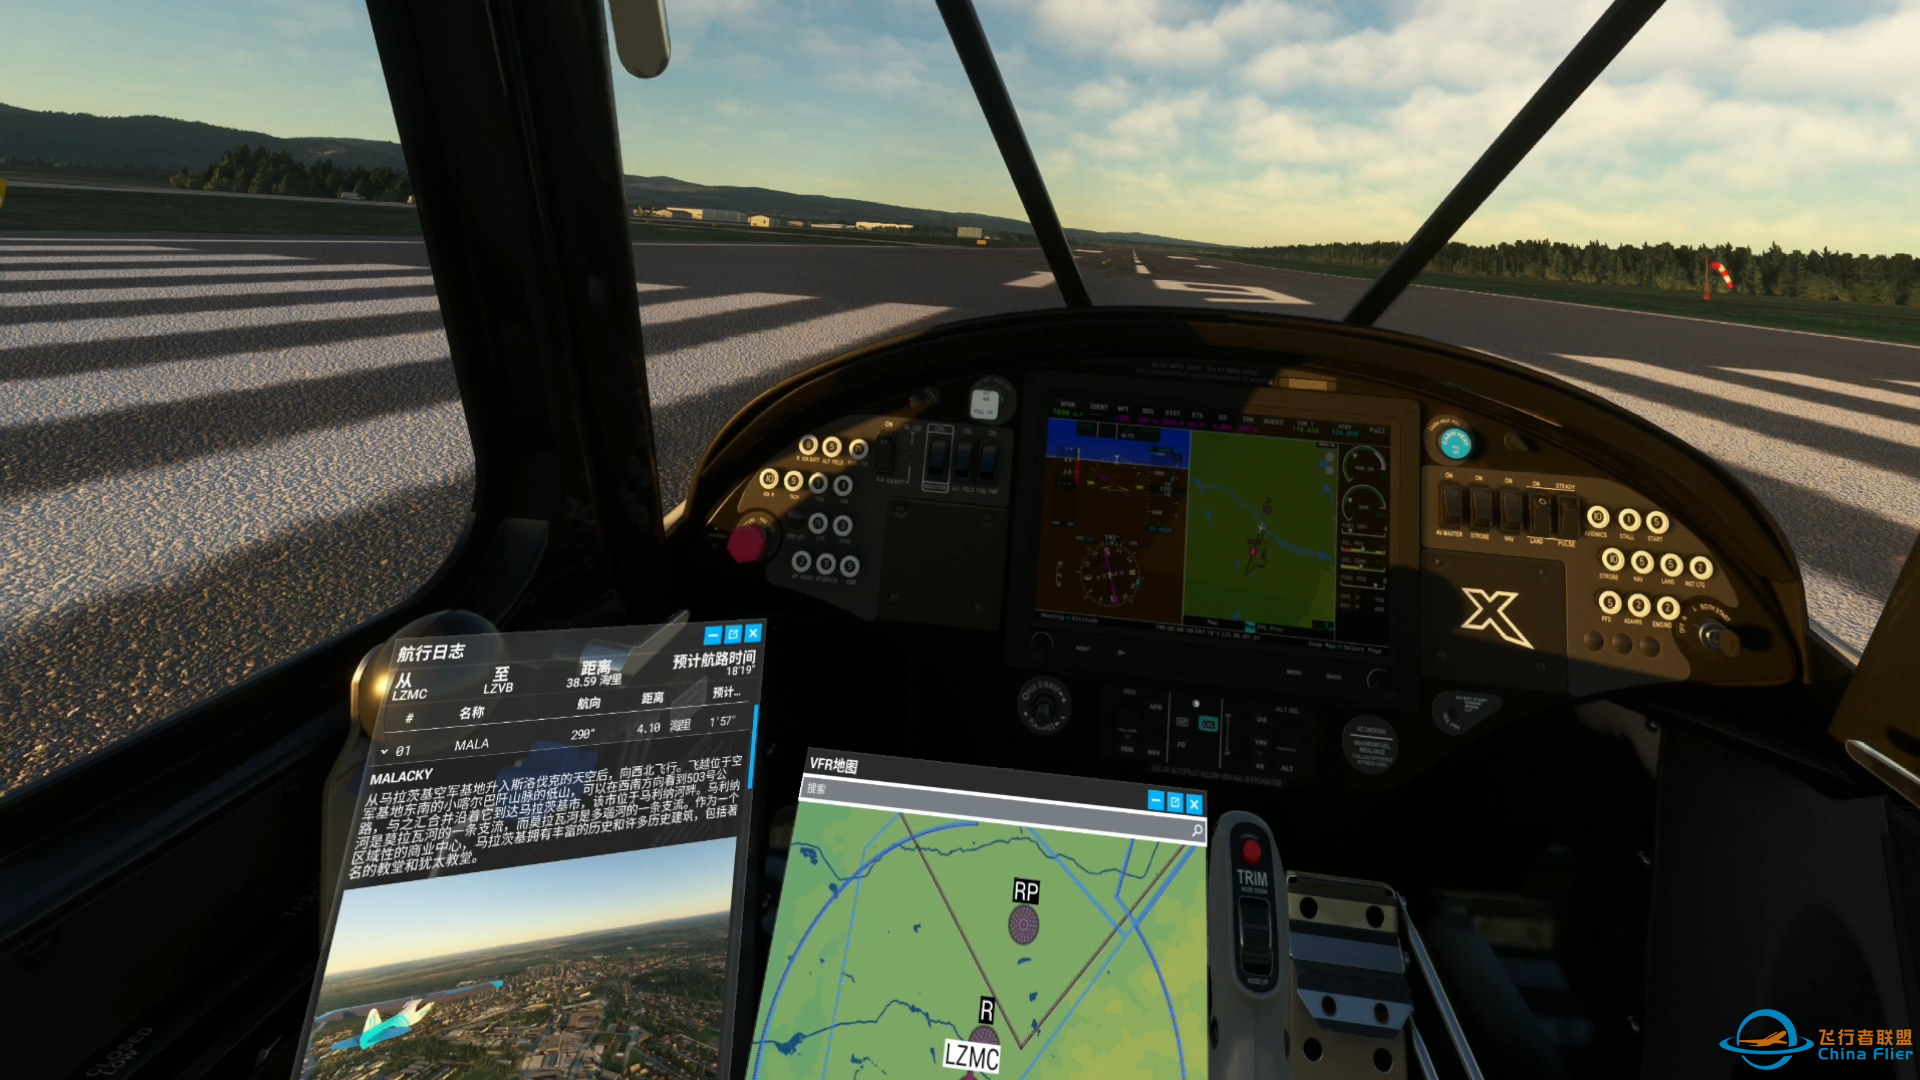 微软模拟飞行 594 VR 多瑙河之旅 郊野之行-8174 